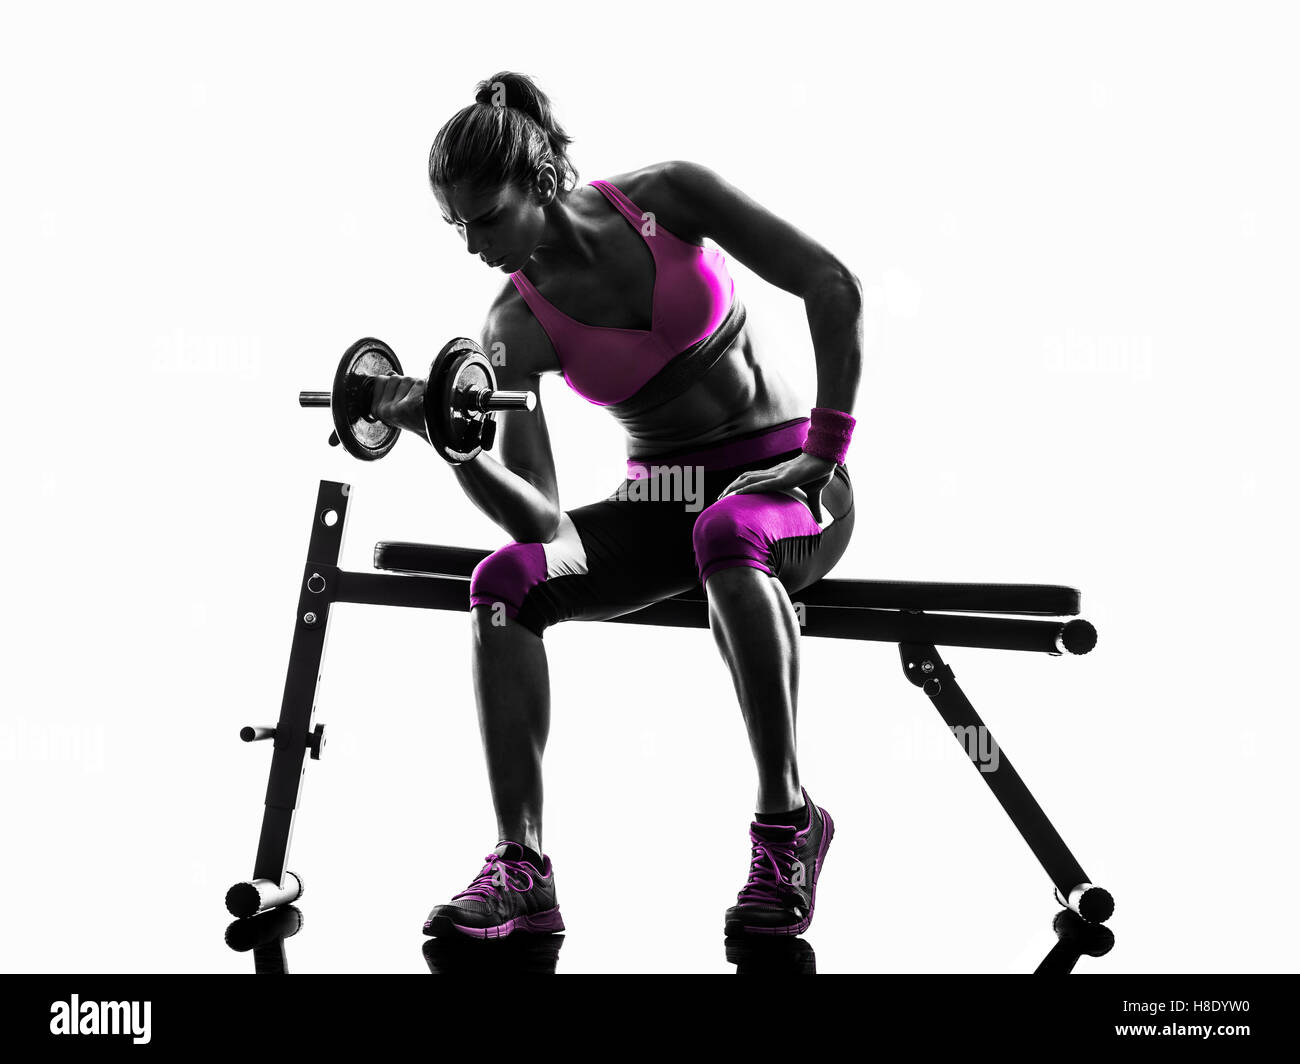 Una donna caucasica pesi di esercizio body building - fitness in studio silhouette isolati su sfondo bianco Foto Stock